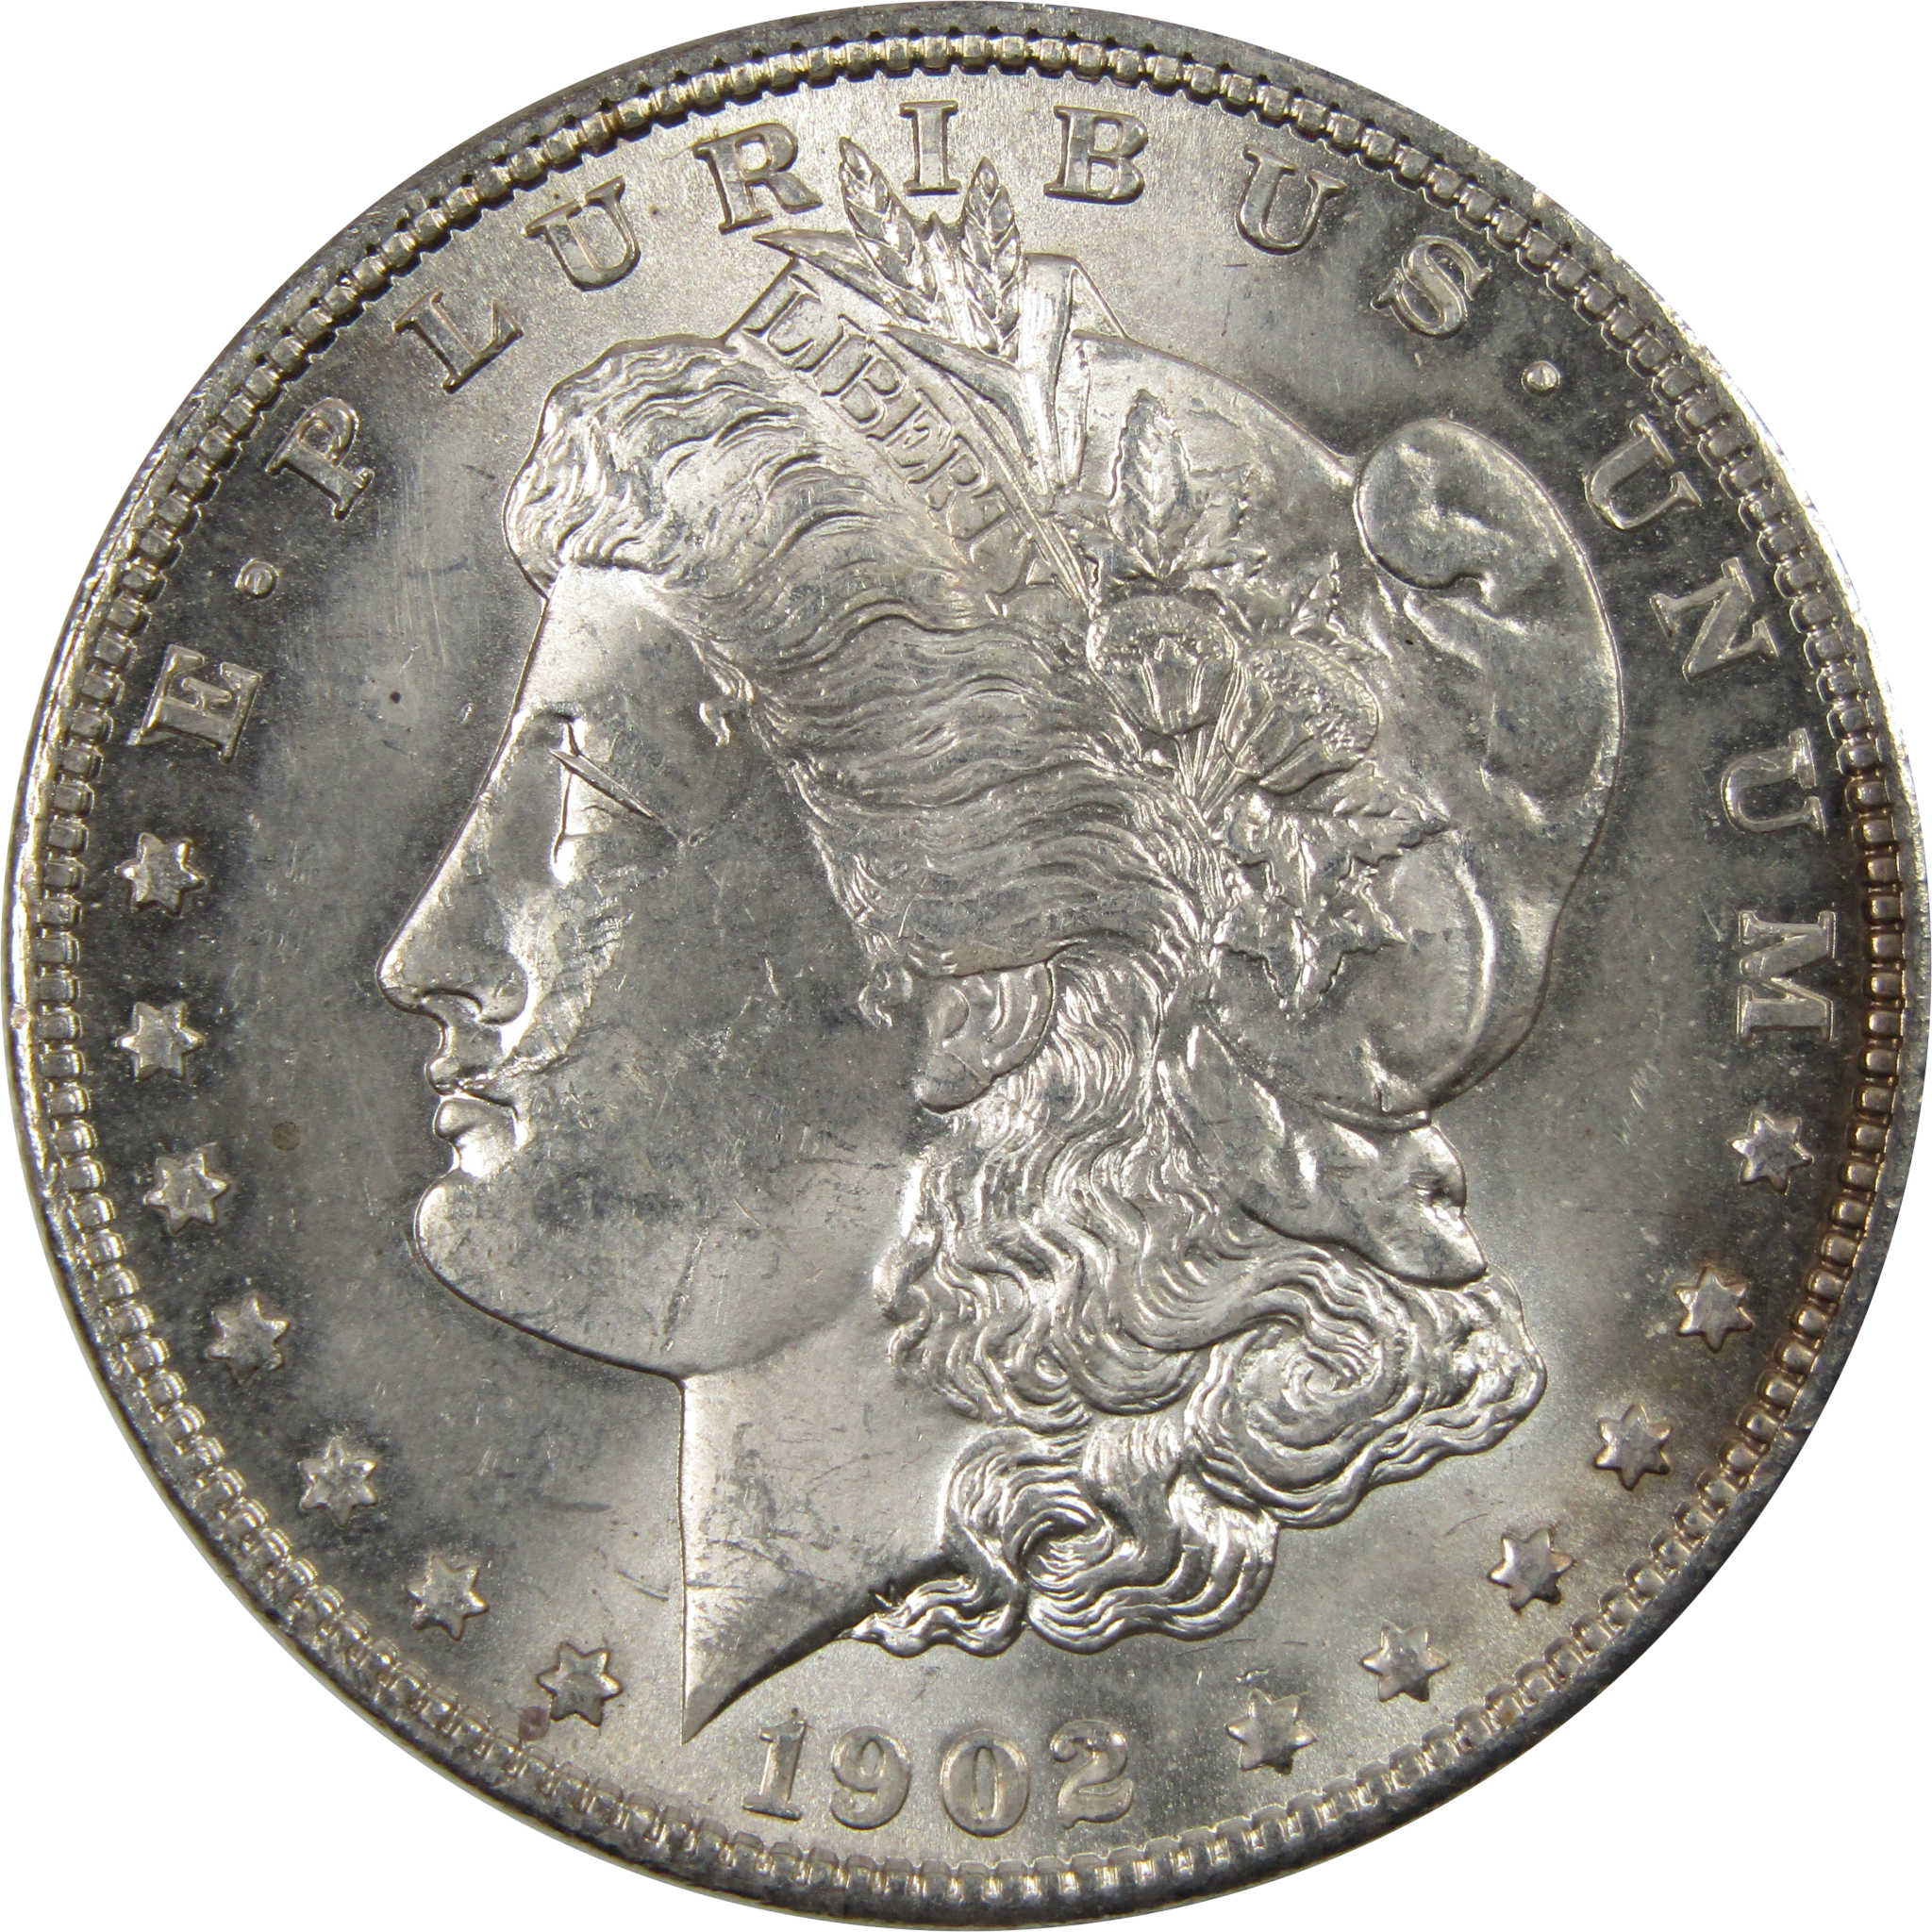 1902 O Morgan Dollar BU Uncirculated 90% Silver $1 Coin SKU:I7303 - Morgan coin - Morgan silver dollar - Morgan silver dollar for sale - Profile Coins &amp; Collectibles